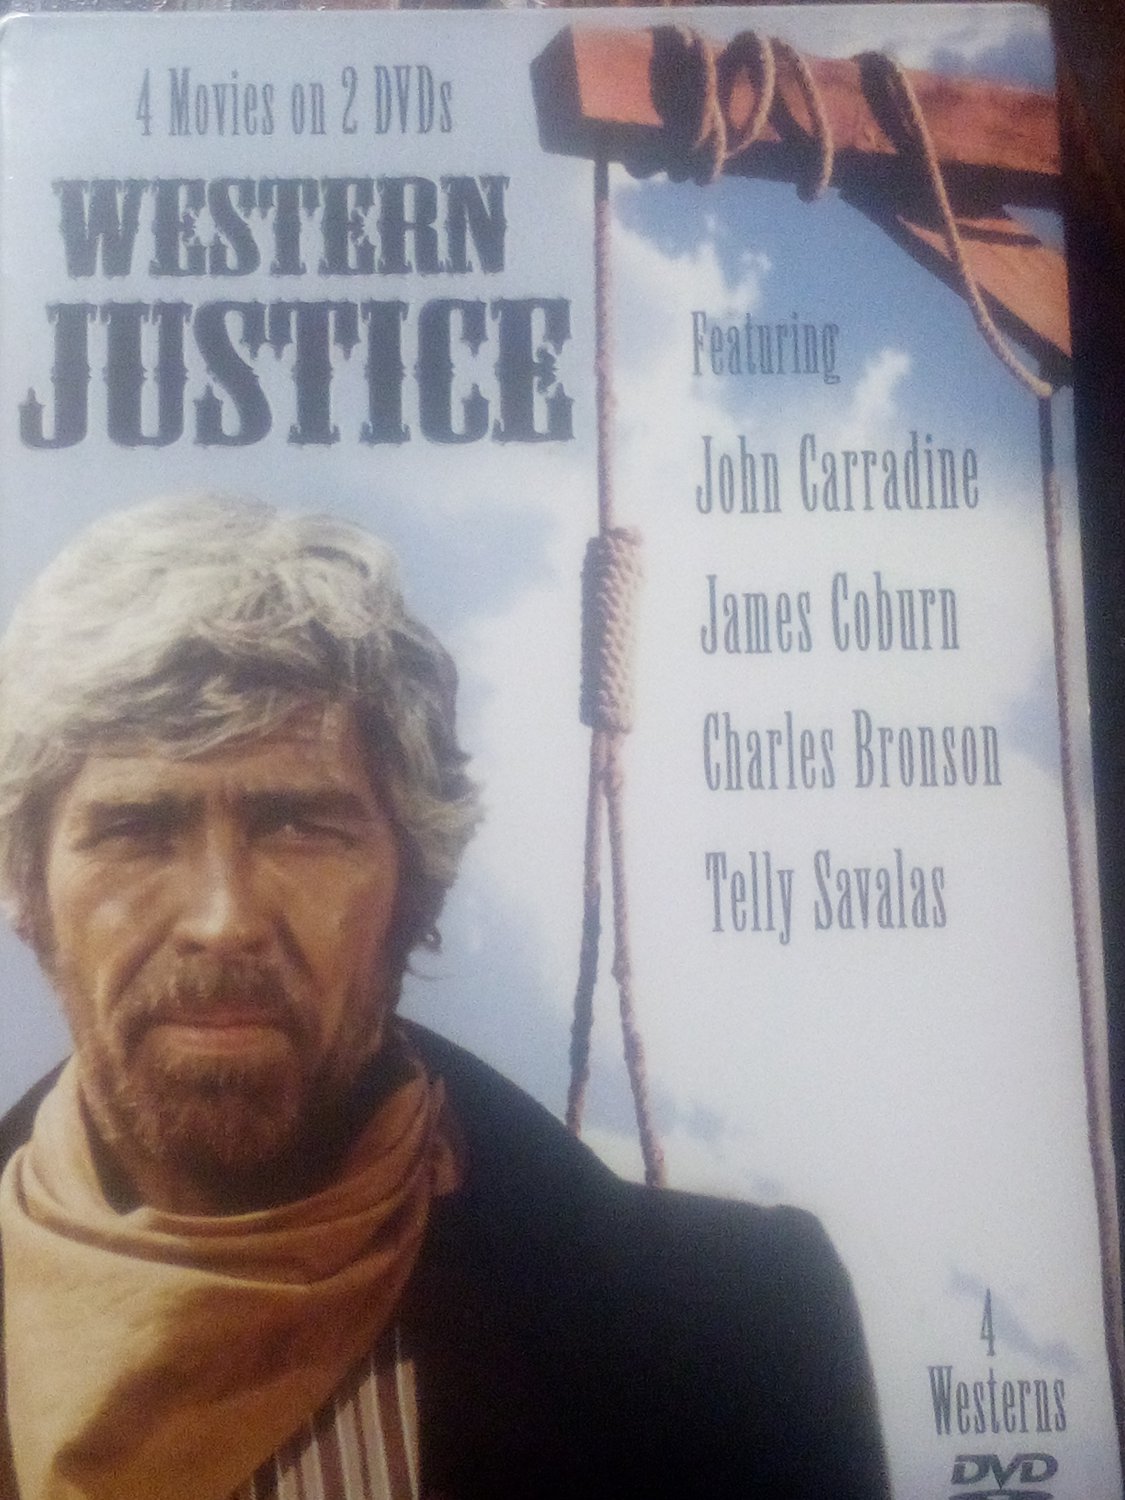 Western Justice